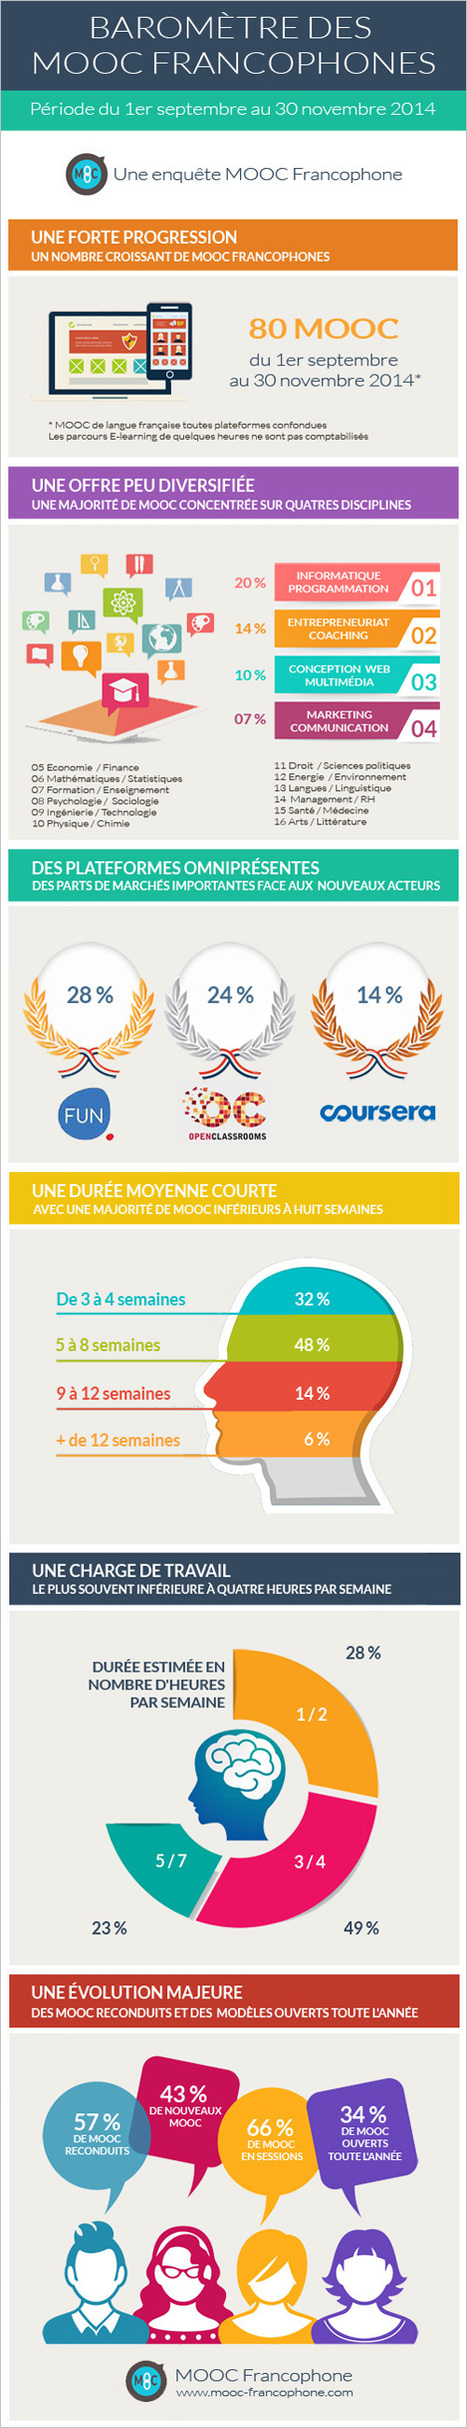 [ Infographie] Le baromètre trimestriel des MOOC Francophones | Revolution in Education | Scoop.it